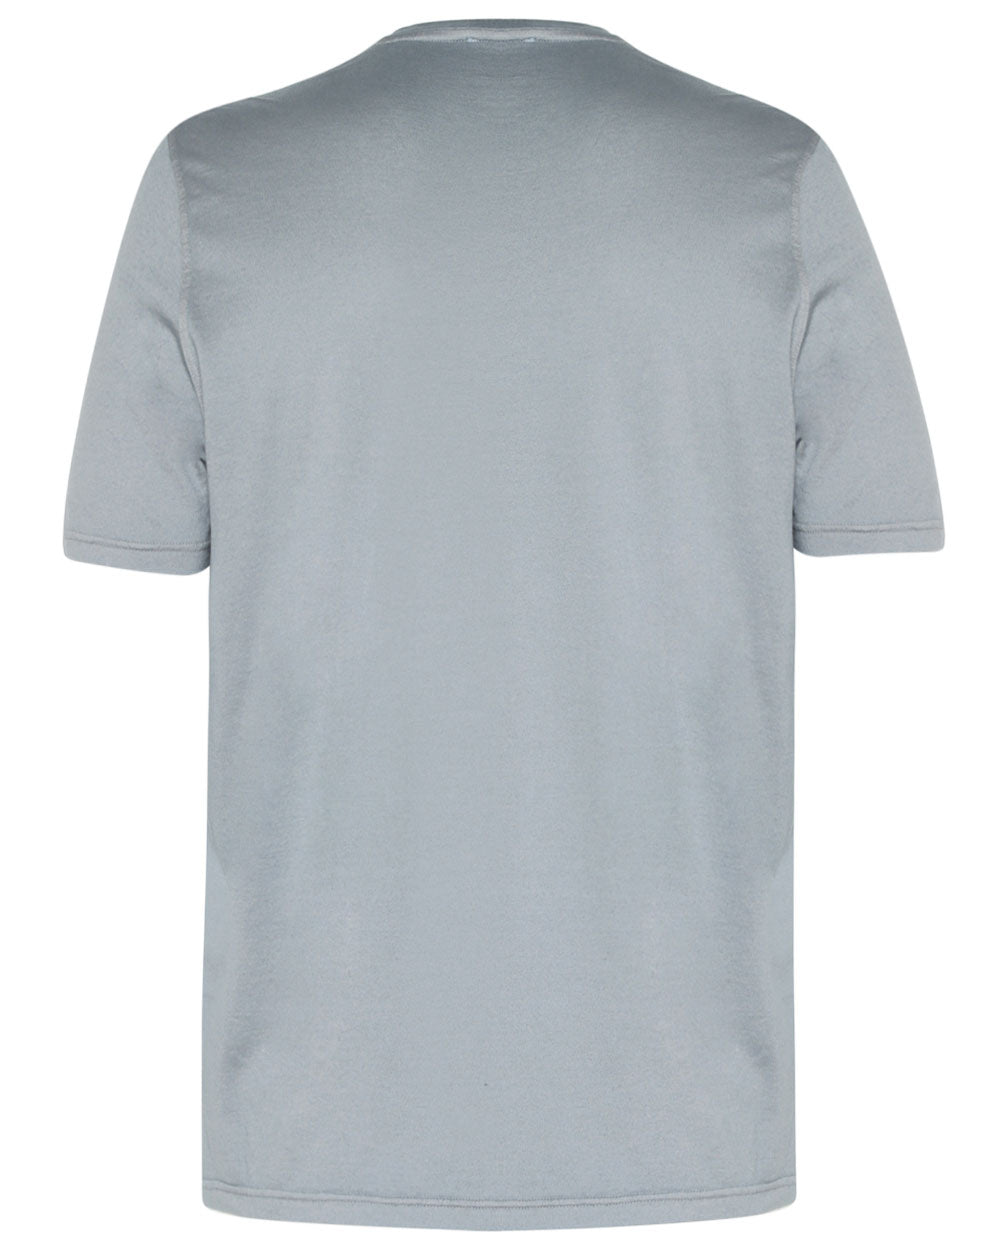 Medium Grey Blue Cotton Blend Short Sleeve T-Shirt